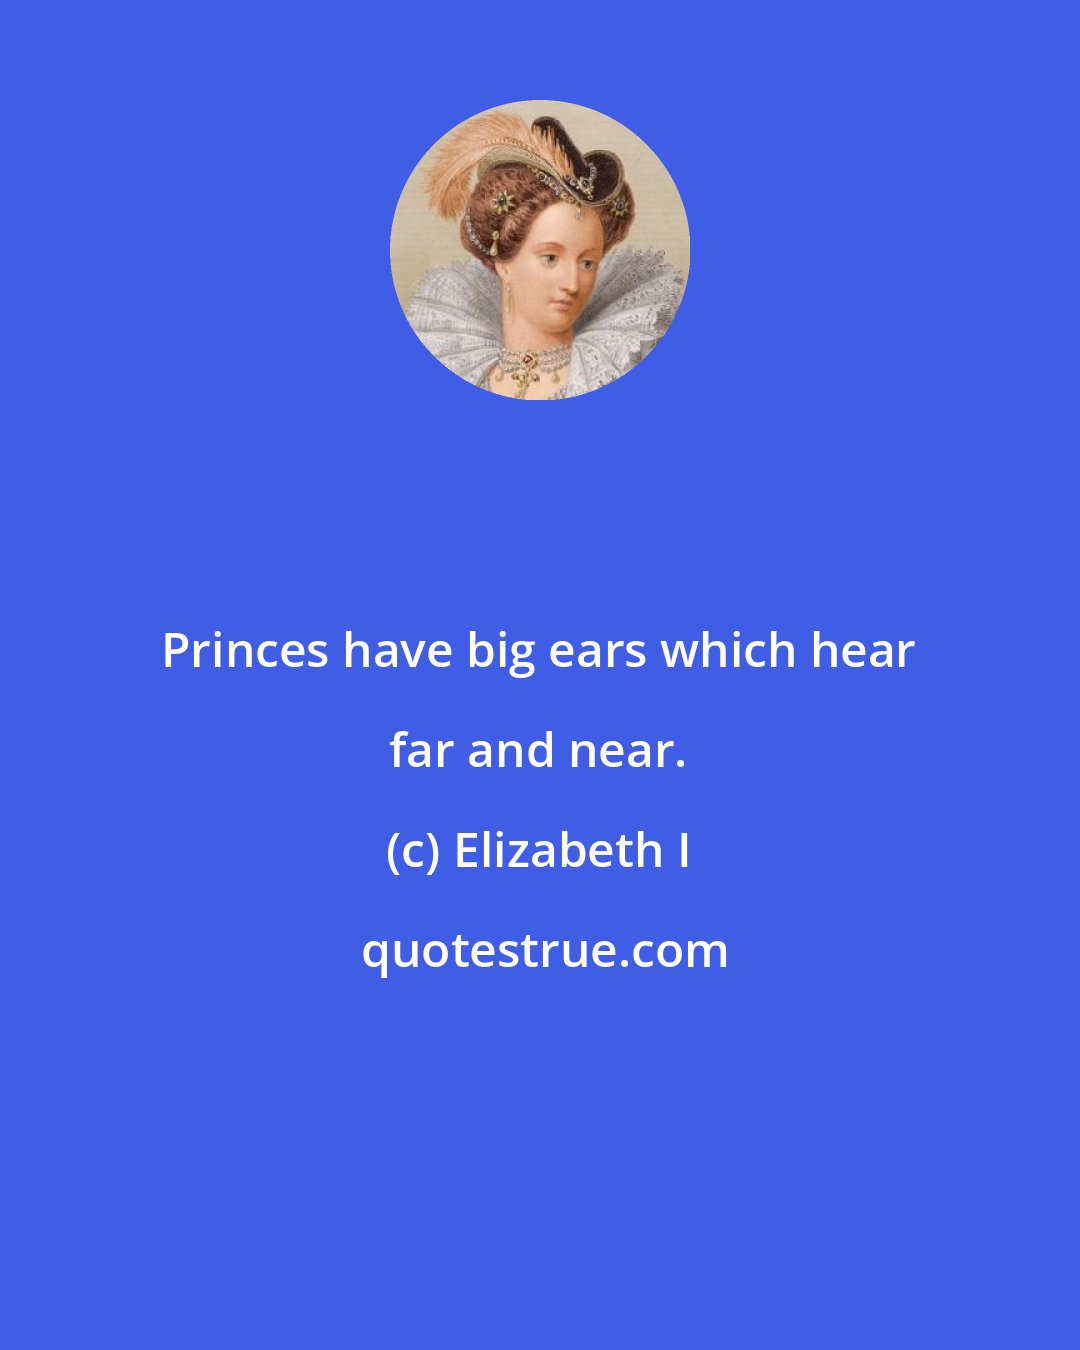 Elizabeth I: Princes have big ears which hear far and near.